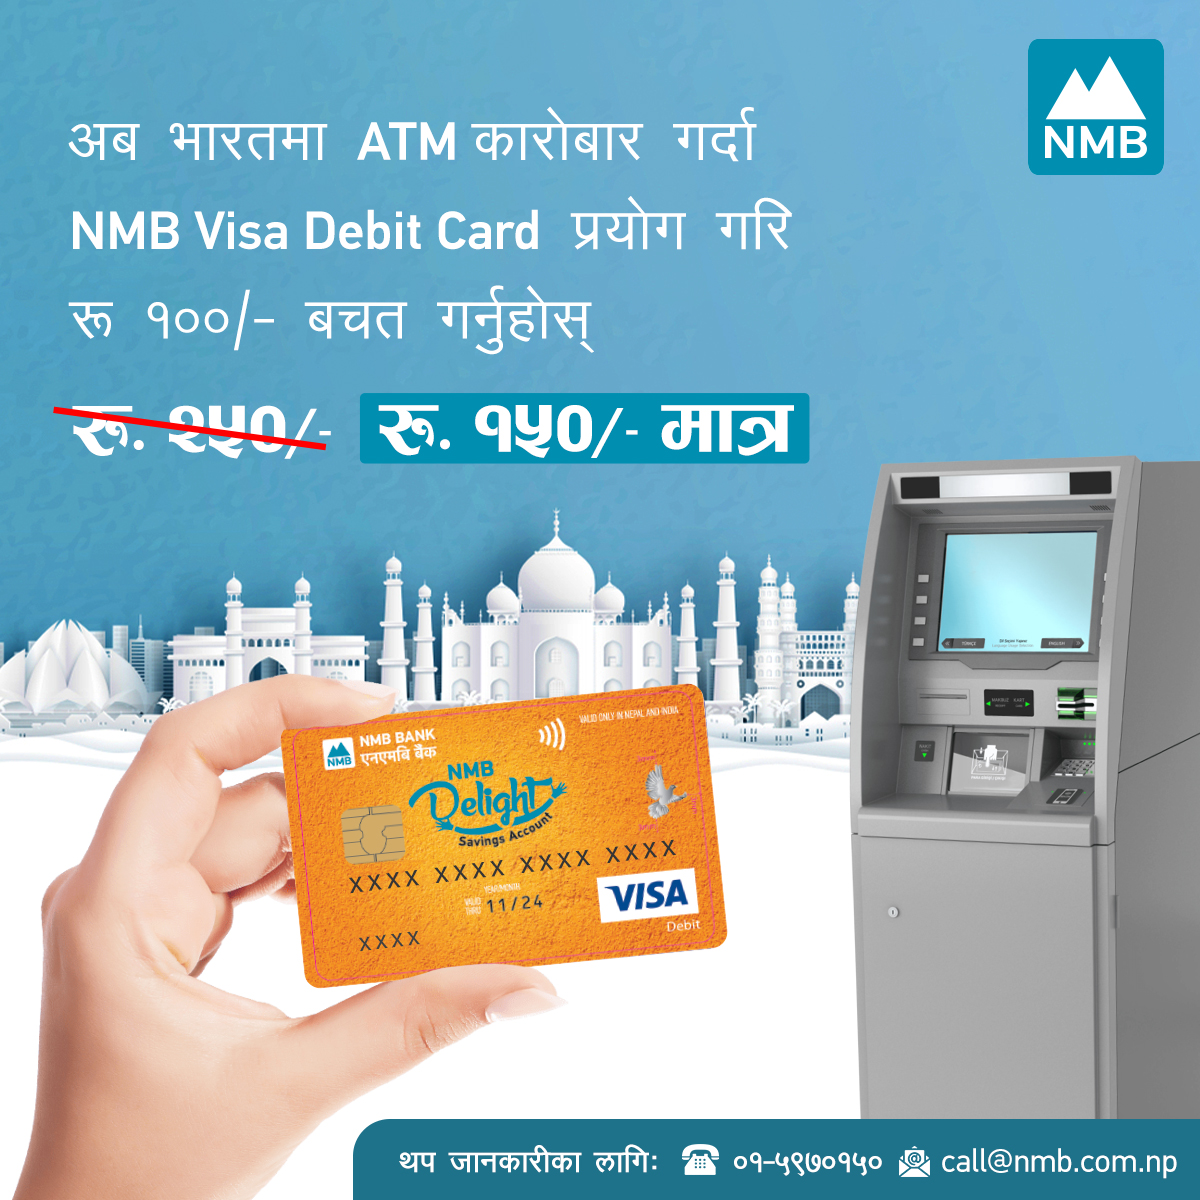 भारतमा एनएमबी बैंकको डेविट कार्ड प्रयोग गर्दा १०० रुपैयाँ बचत